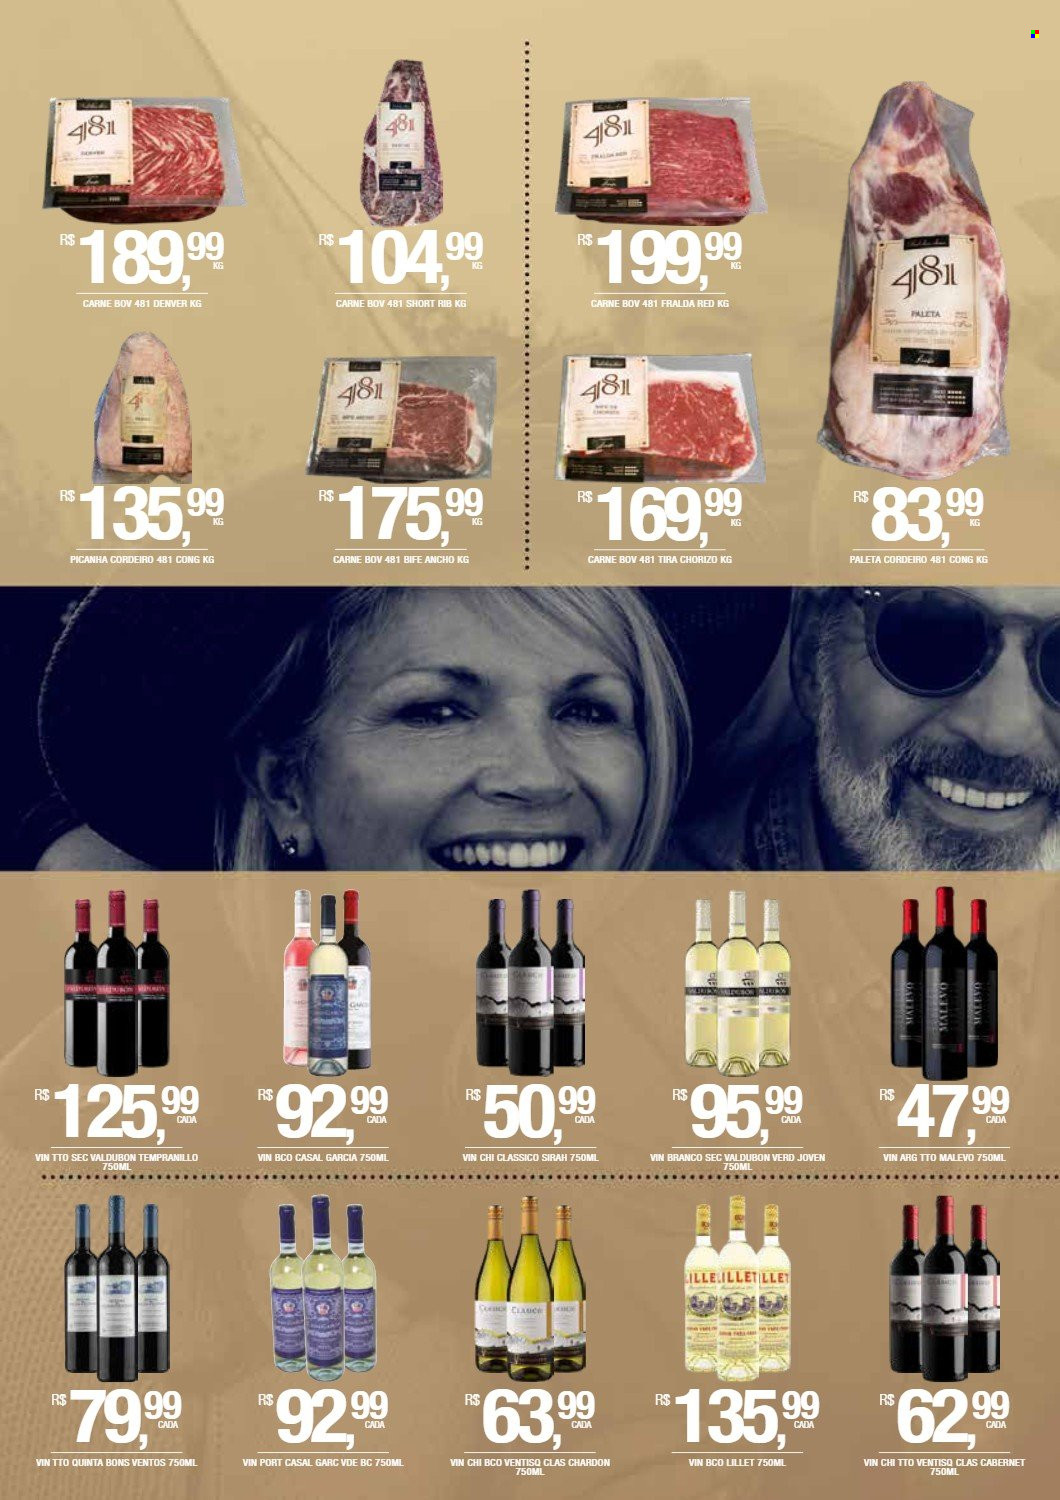 thumbnail - Folheto Empório DB - 01/10/2021 - 30/10/2021 - Produtos em promoção - picanha, carne, cordeiro, chouriço, vinho, cabernet, fraldas. Página 2.